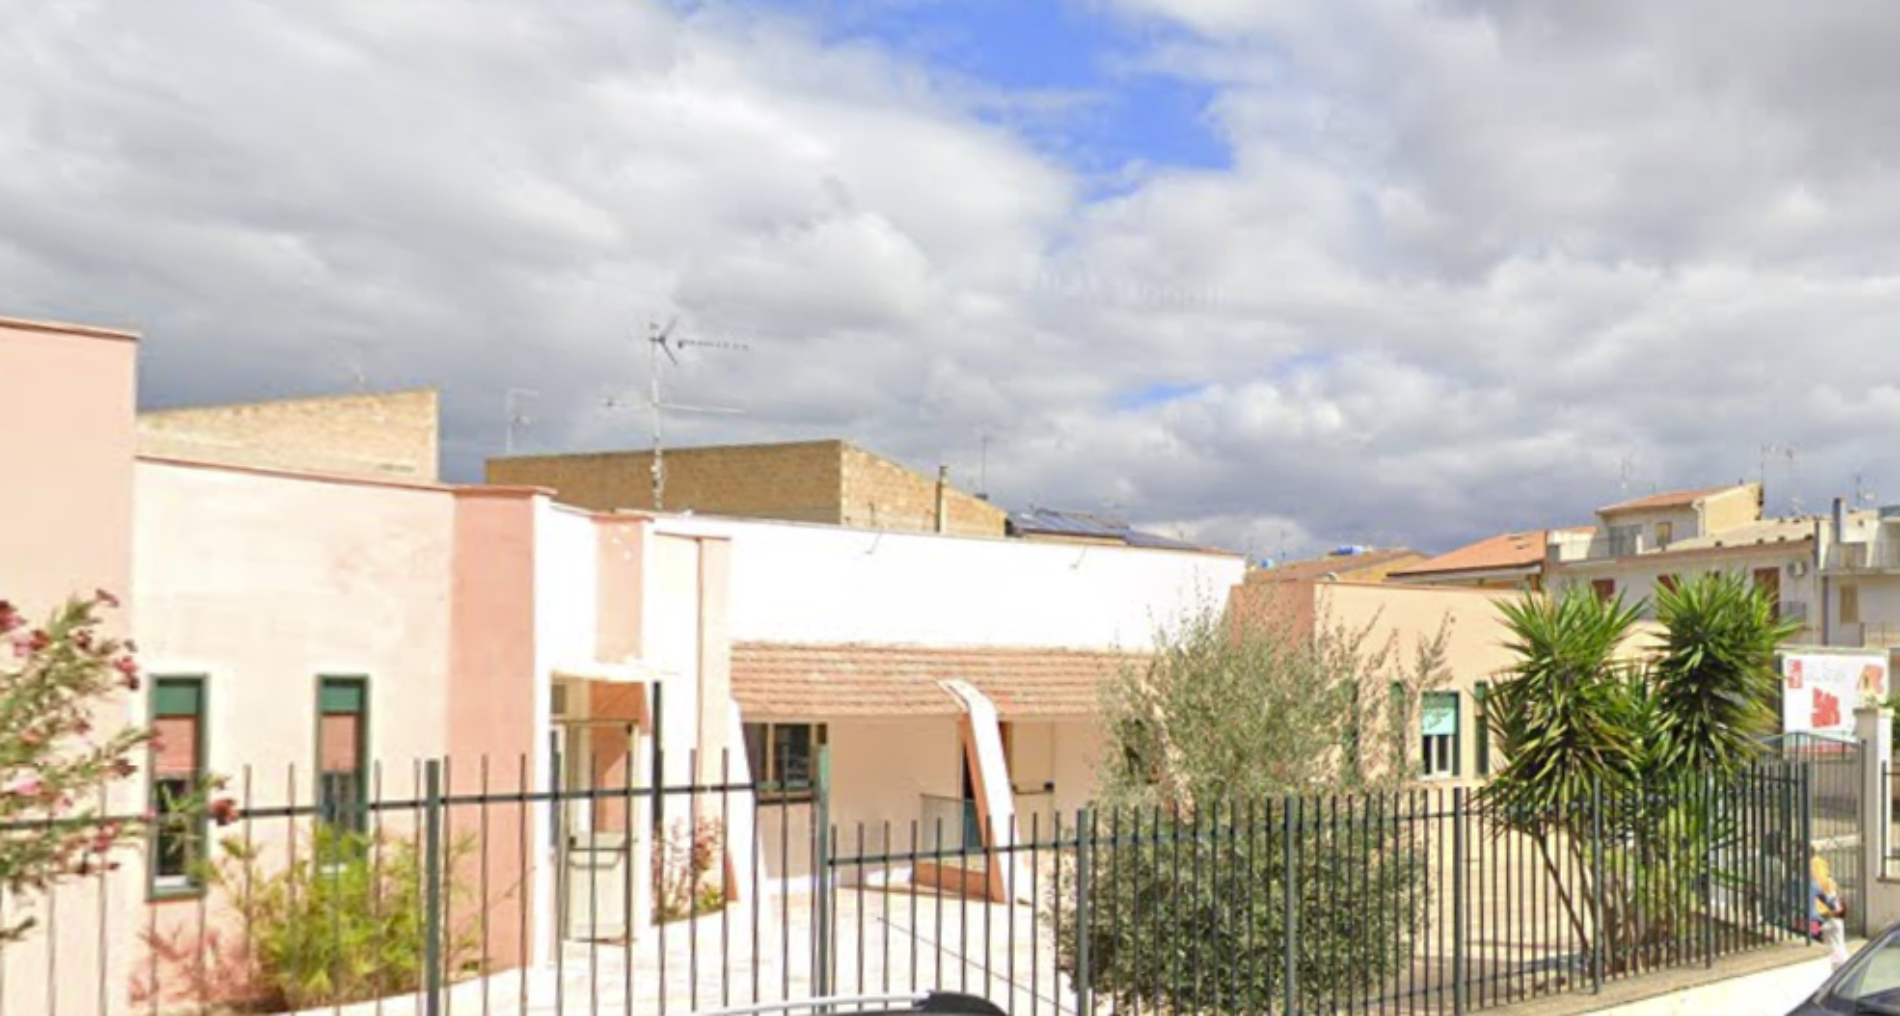 Barrafranca. Al via l’iter per la demolizione e la ricostruzione del Plesso scolastico G. Paolo II per la realizzazione di un asilo nido comunale.